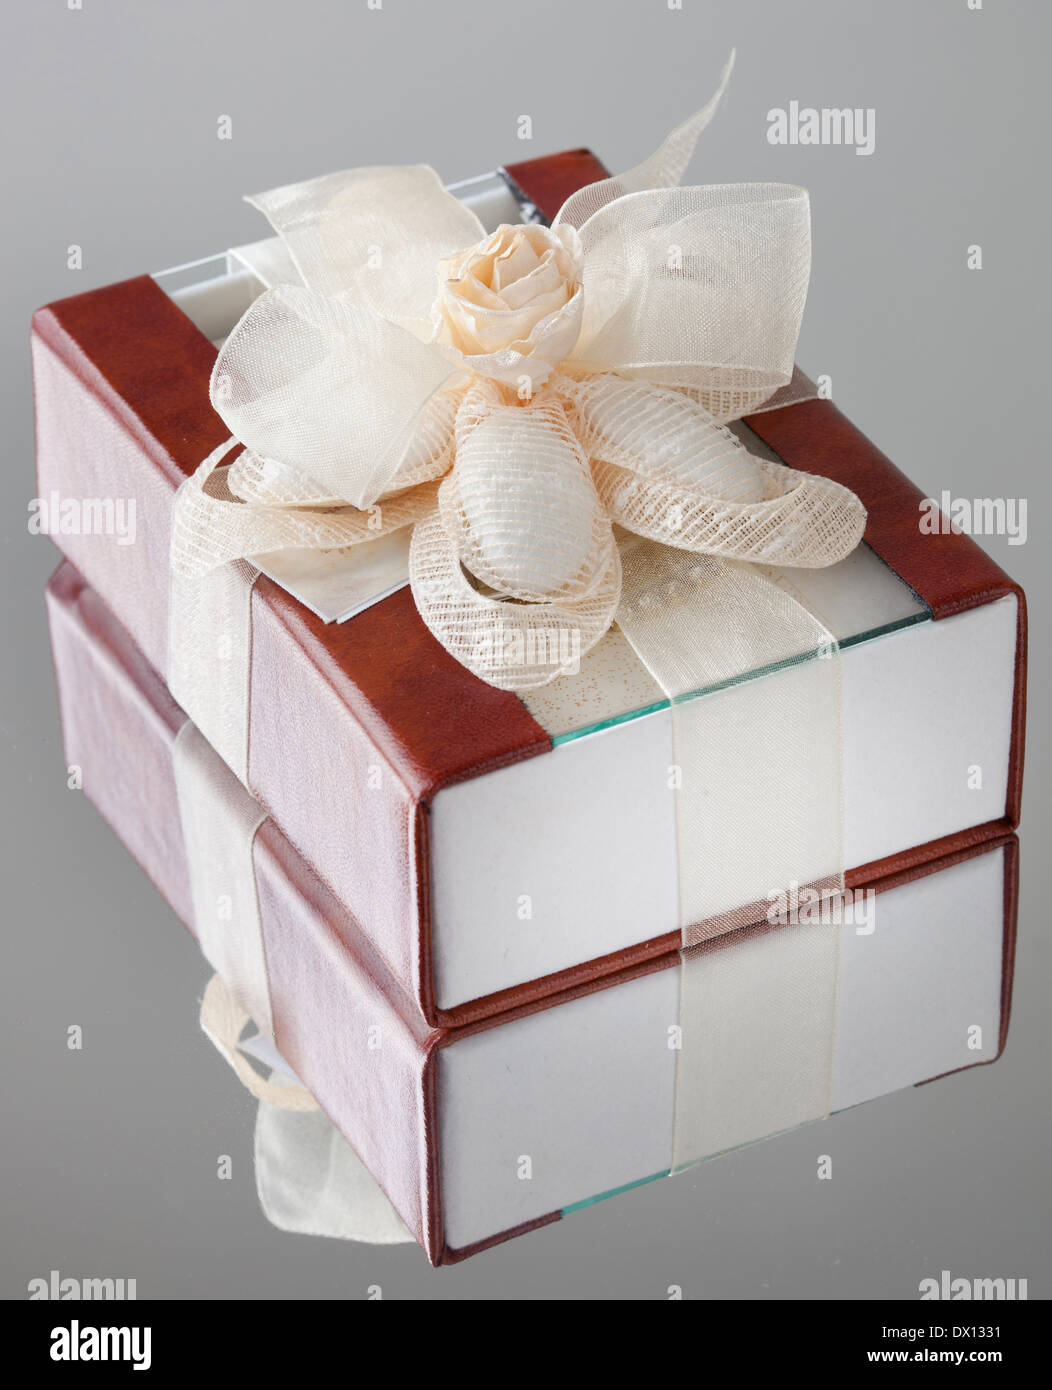 La boîte cadeau avec un couvercle marron est enveloppé par une bande beige avec un archet. Banque D'Images